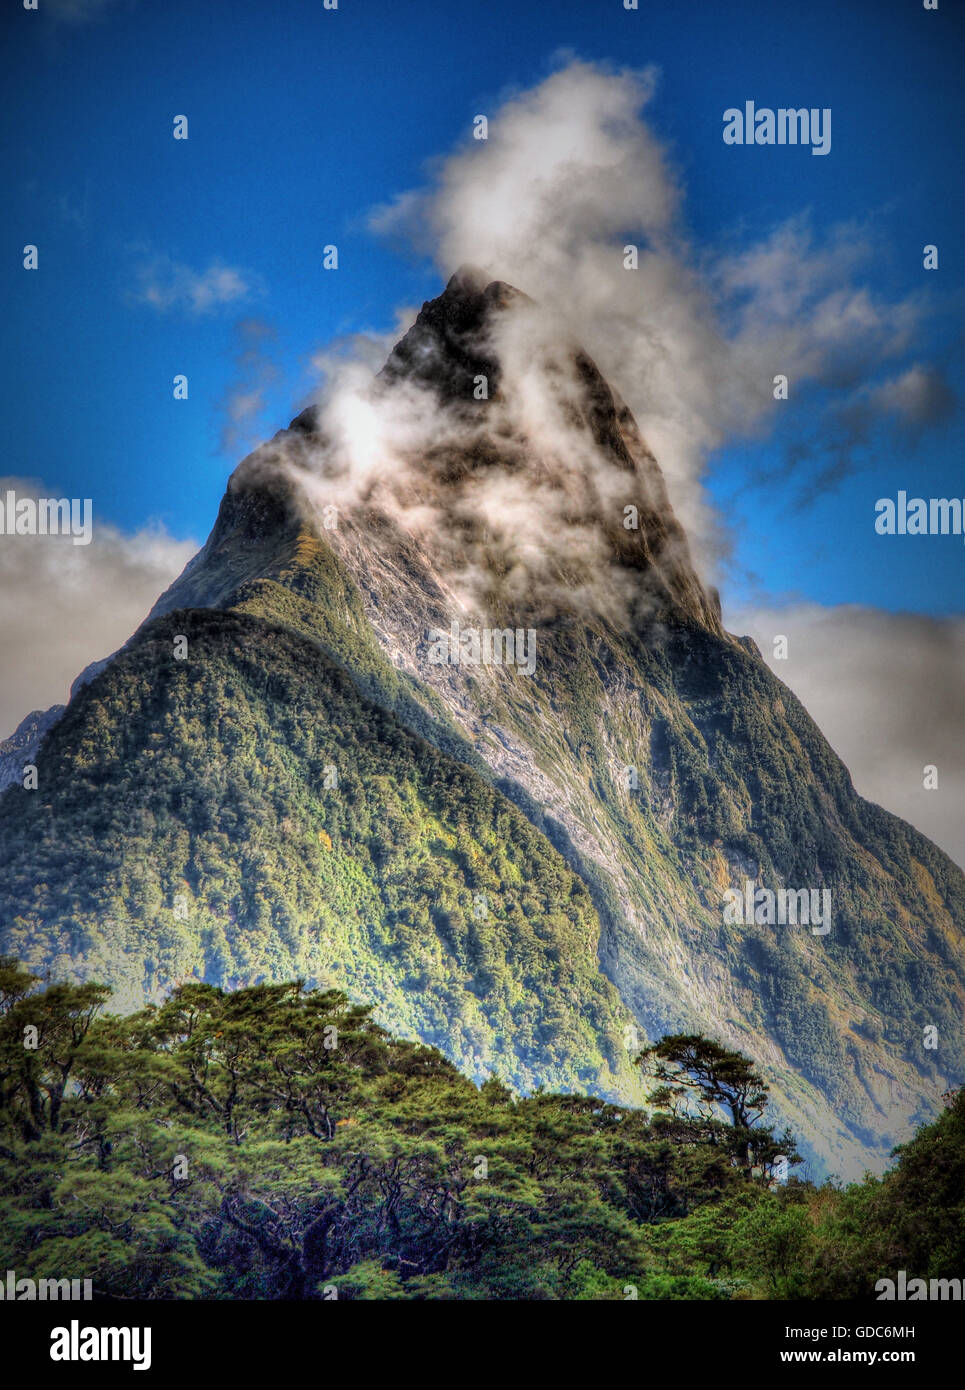 Mitre,montage,Nouvelle-Zélande Milford Sound, Nouvelle-Zélande, île du sud,montagne,la forêt,pyramide,ciel,nuage,la végétation, peak Banque D'Images